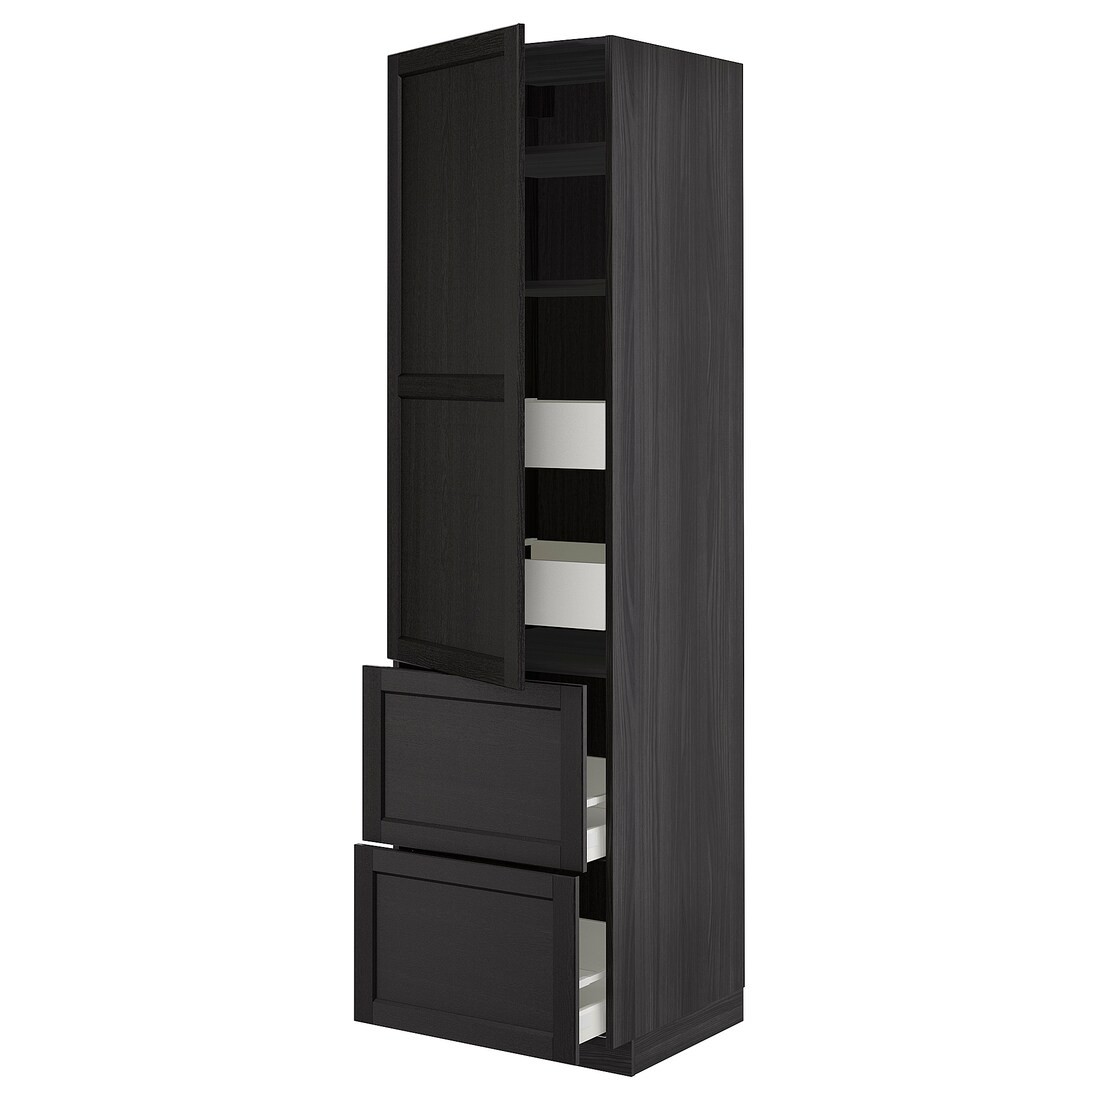 IKEA METOD МЕТОД / MAXIMERA МАКСИМЕРА Высокий шкаф с полками / ящиками, черный / Lerhyttan черная морилка, 60x60x220 см 29377993 | 293.779.93